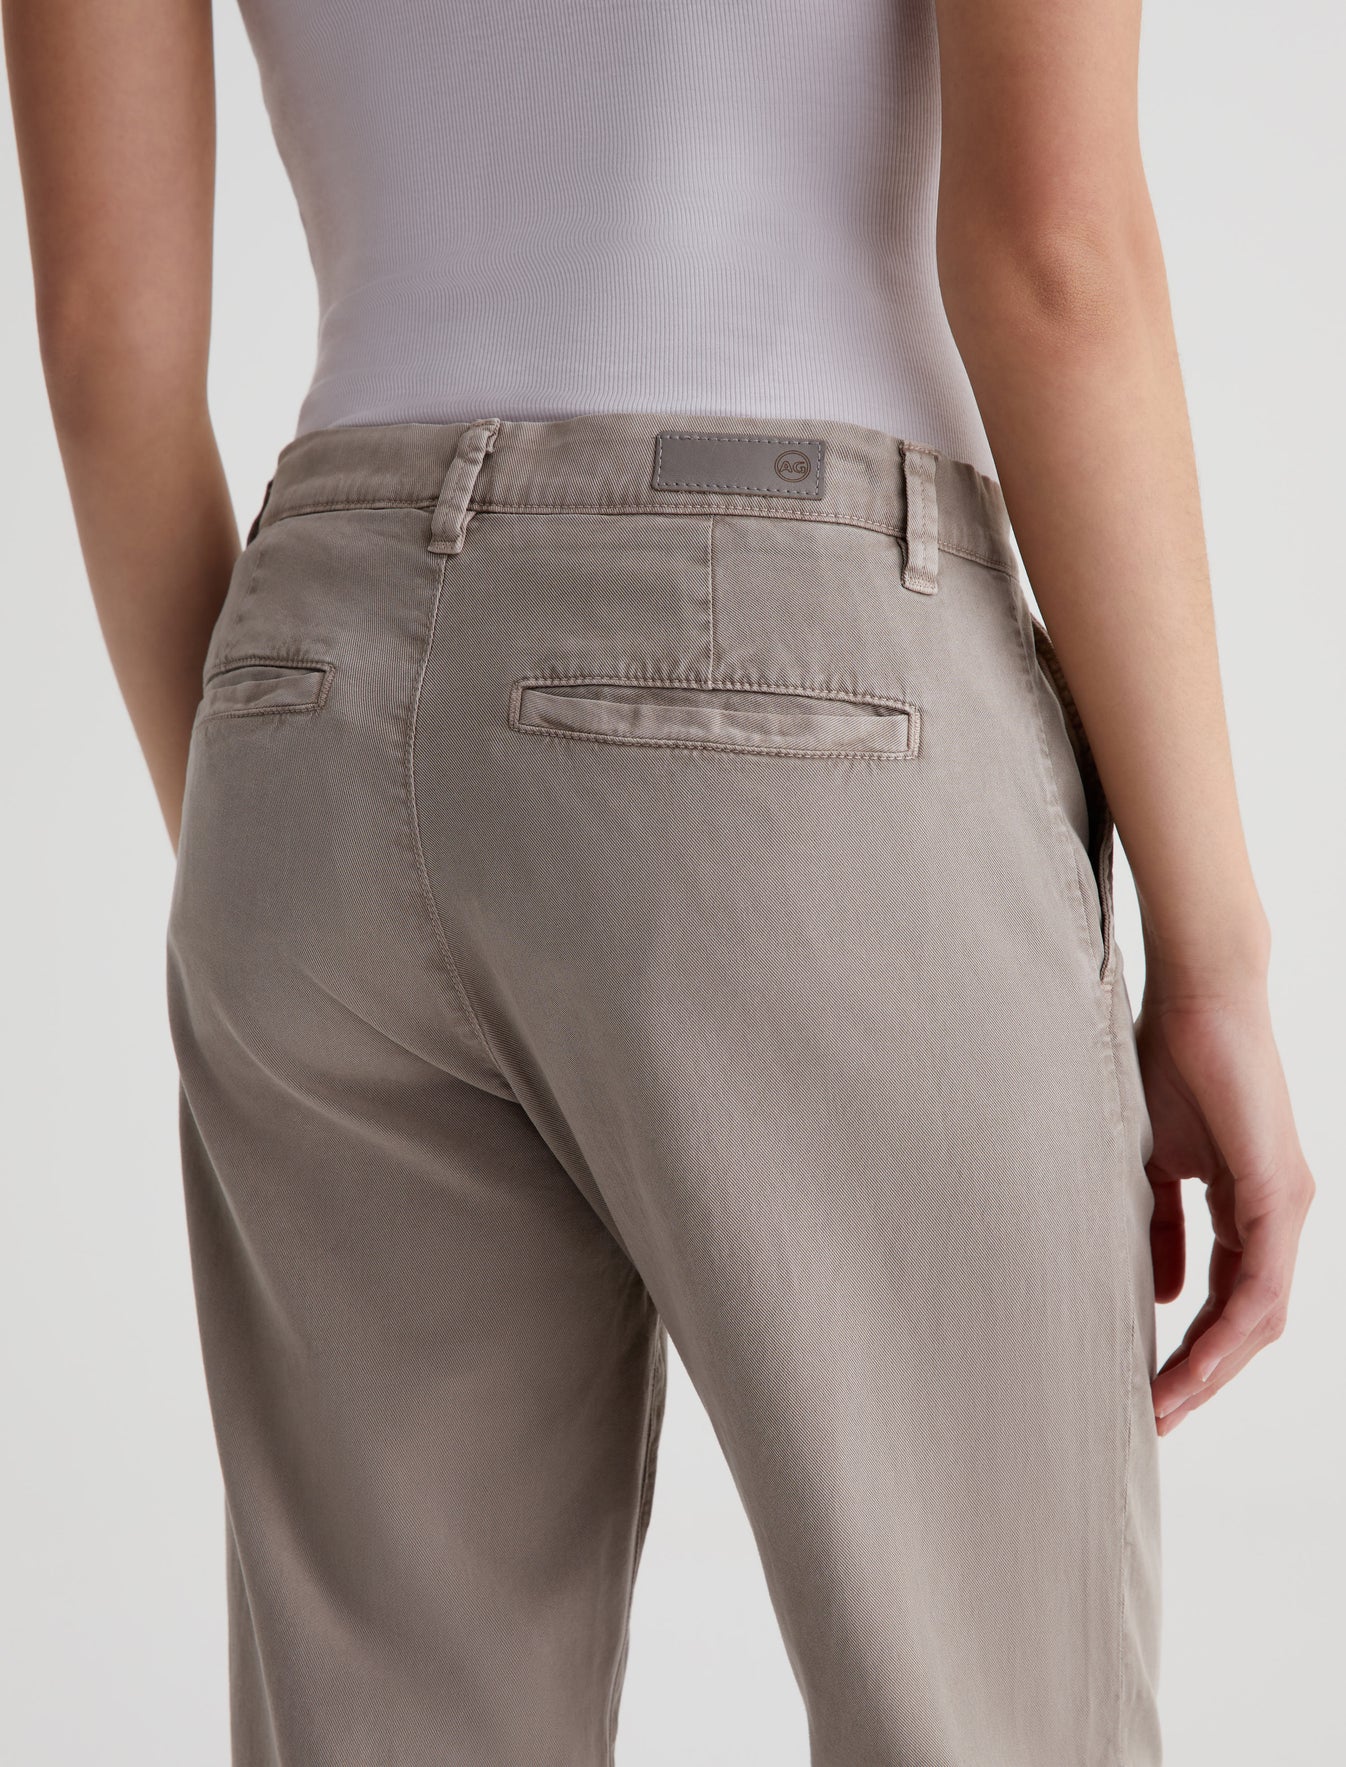 Caden Straight Sulfur Desert Taupe Tailored Trouser Women Bottom Photo 5